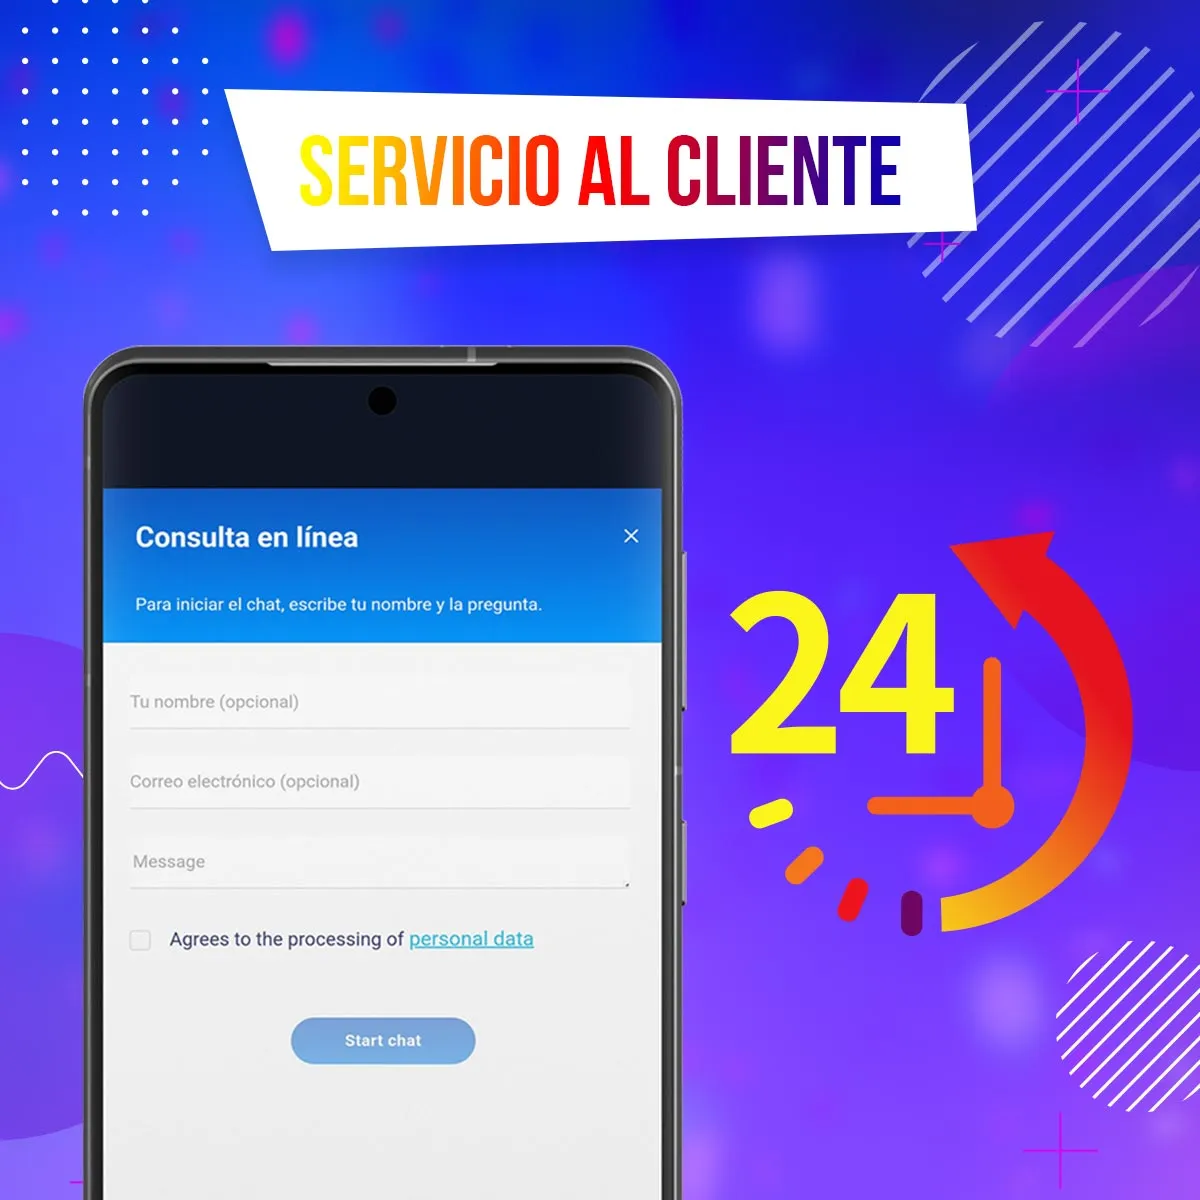 El chat de atención al cliente de 1win está disponible 24 horas al día, 7 días a la semana